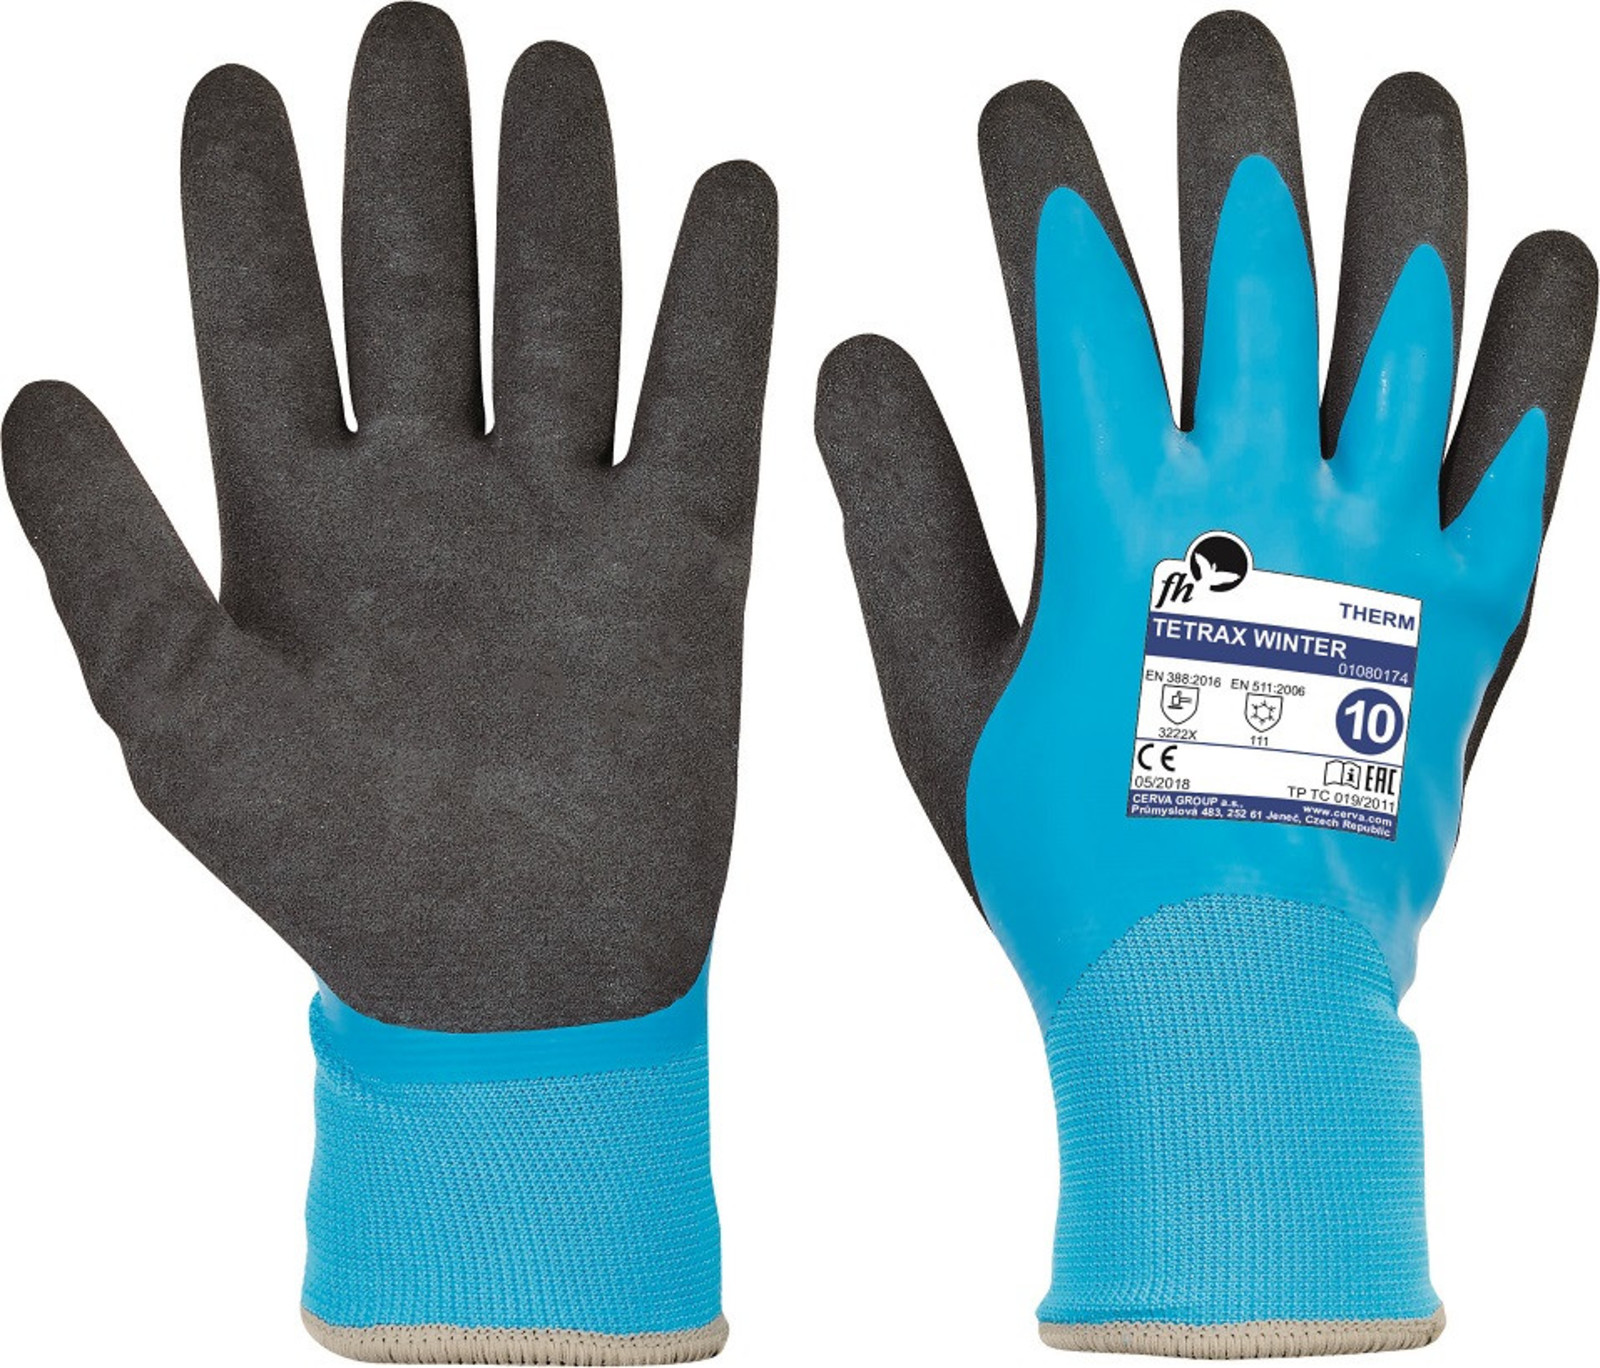 Zateplené rukavice Free Hand Tetrax Winter - veľkosť: 10/XL, farba: modrá/čierna